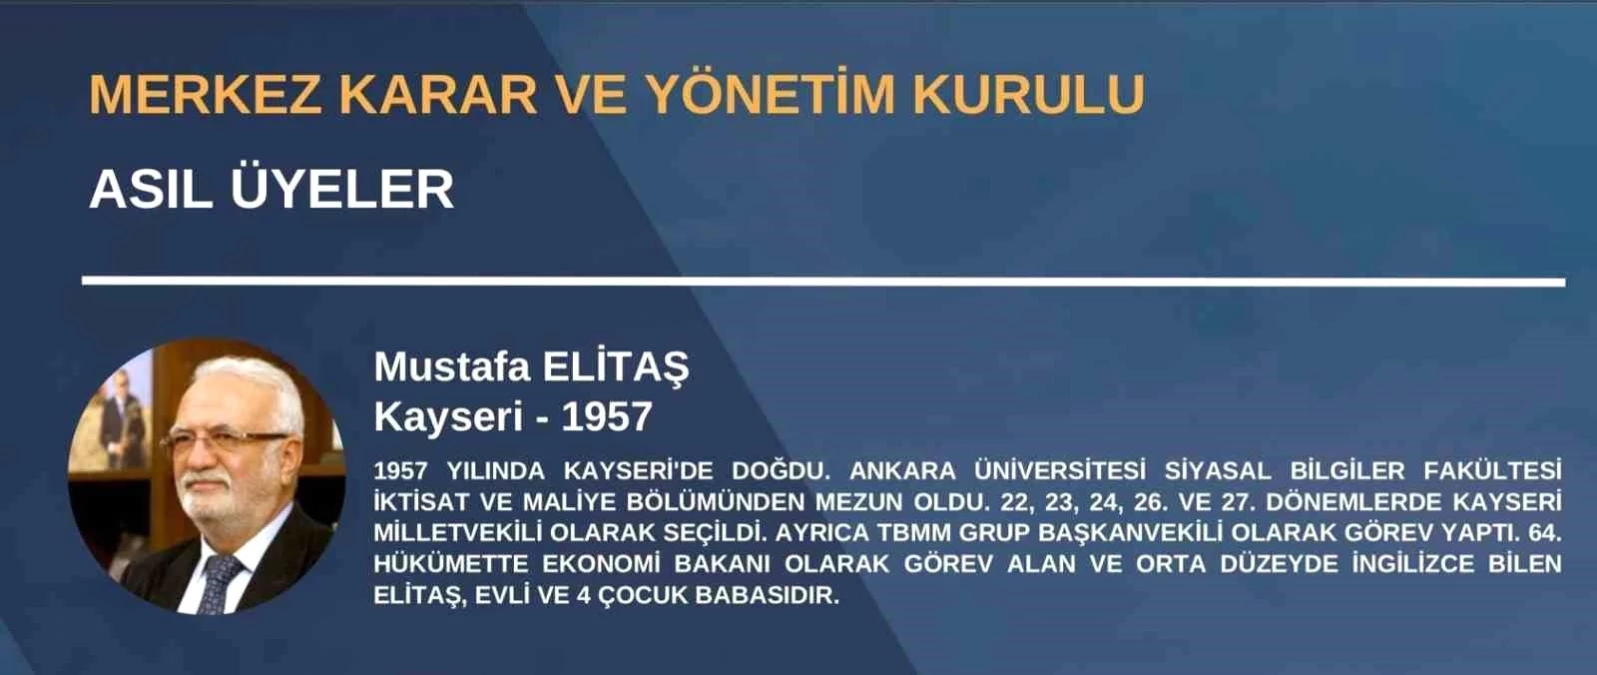 Cumhurbaşkanı Recep Tayyip Erdoğan, 4. Olağanüstü Büyük Kongre\'de 1399 geçerli oyun tamamını alarak AK Parti Genel Başkanlığına yeniden seçildi.